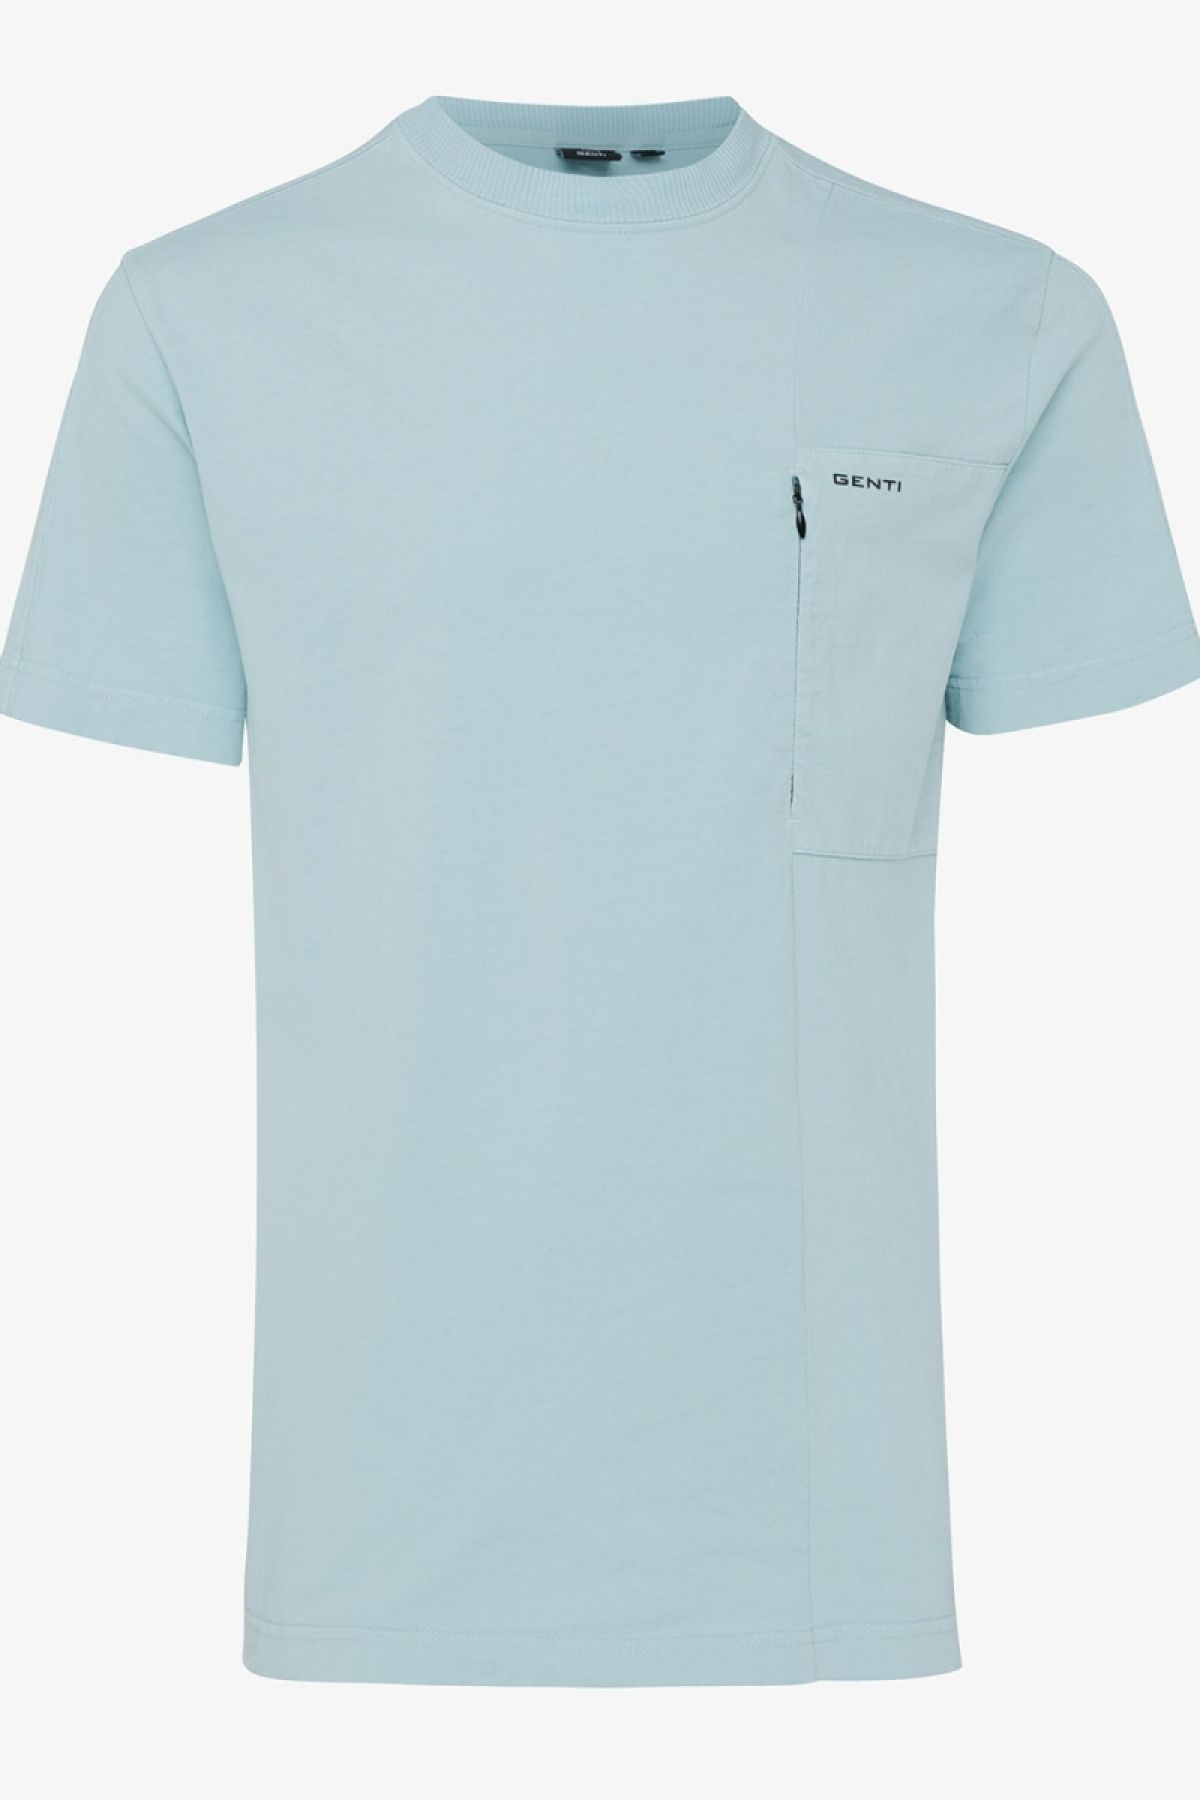 T-shirt zip pocket groen